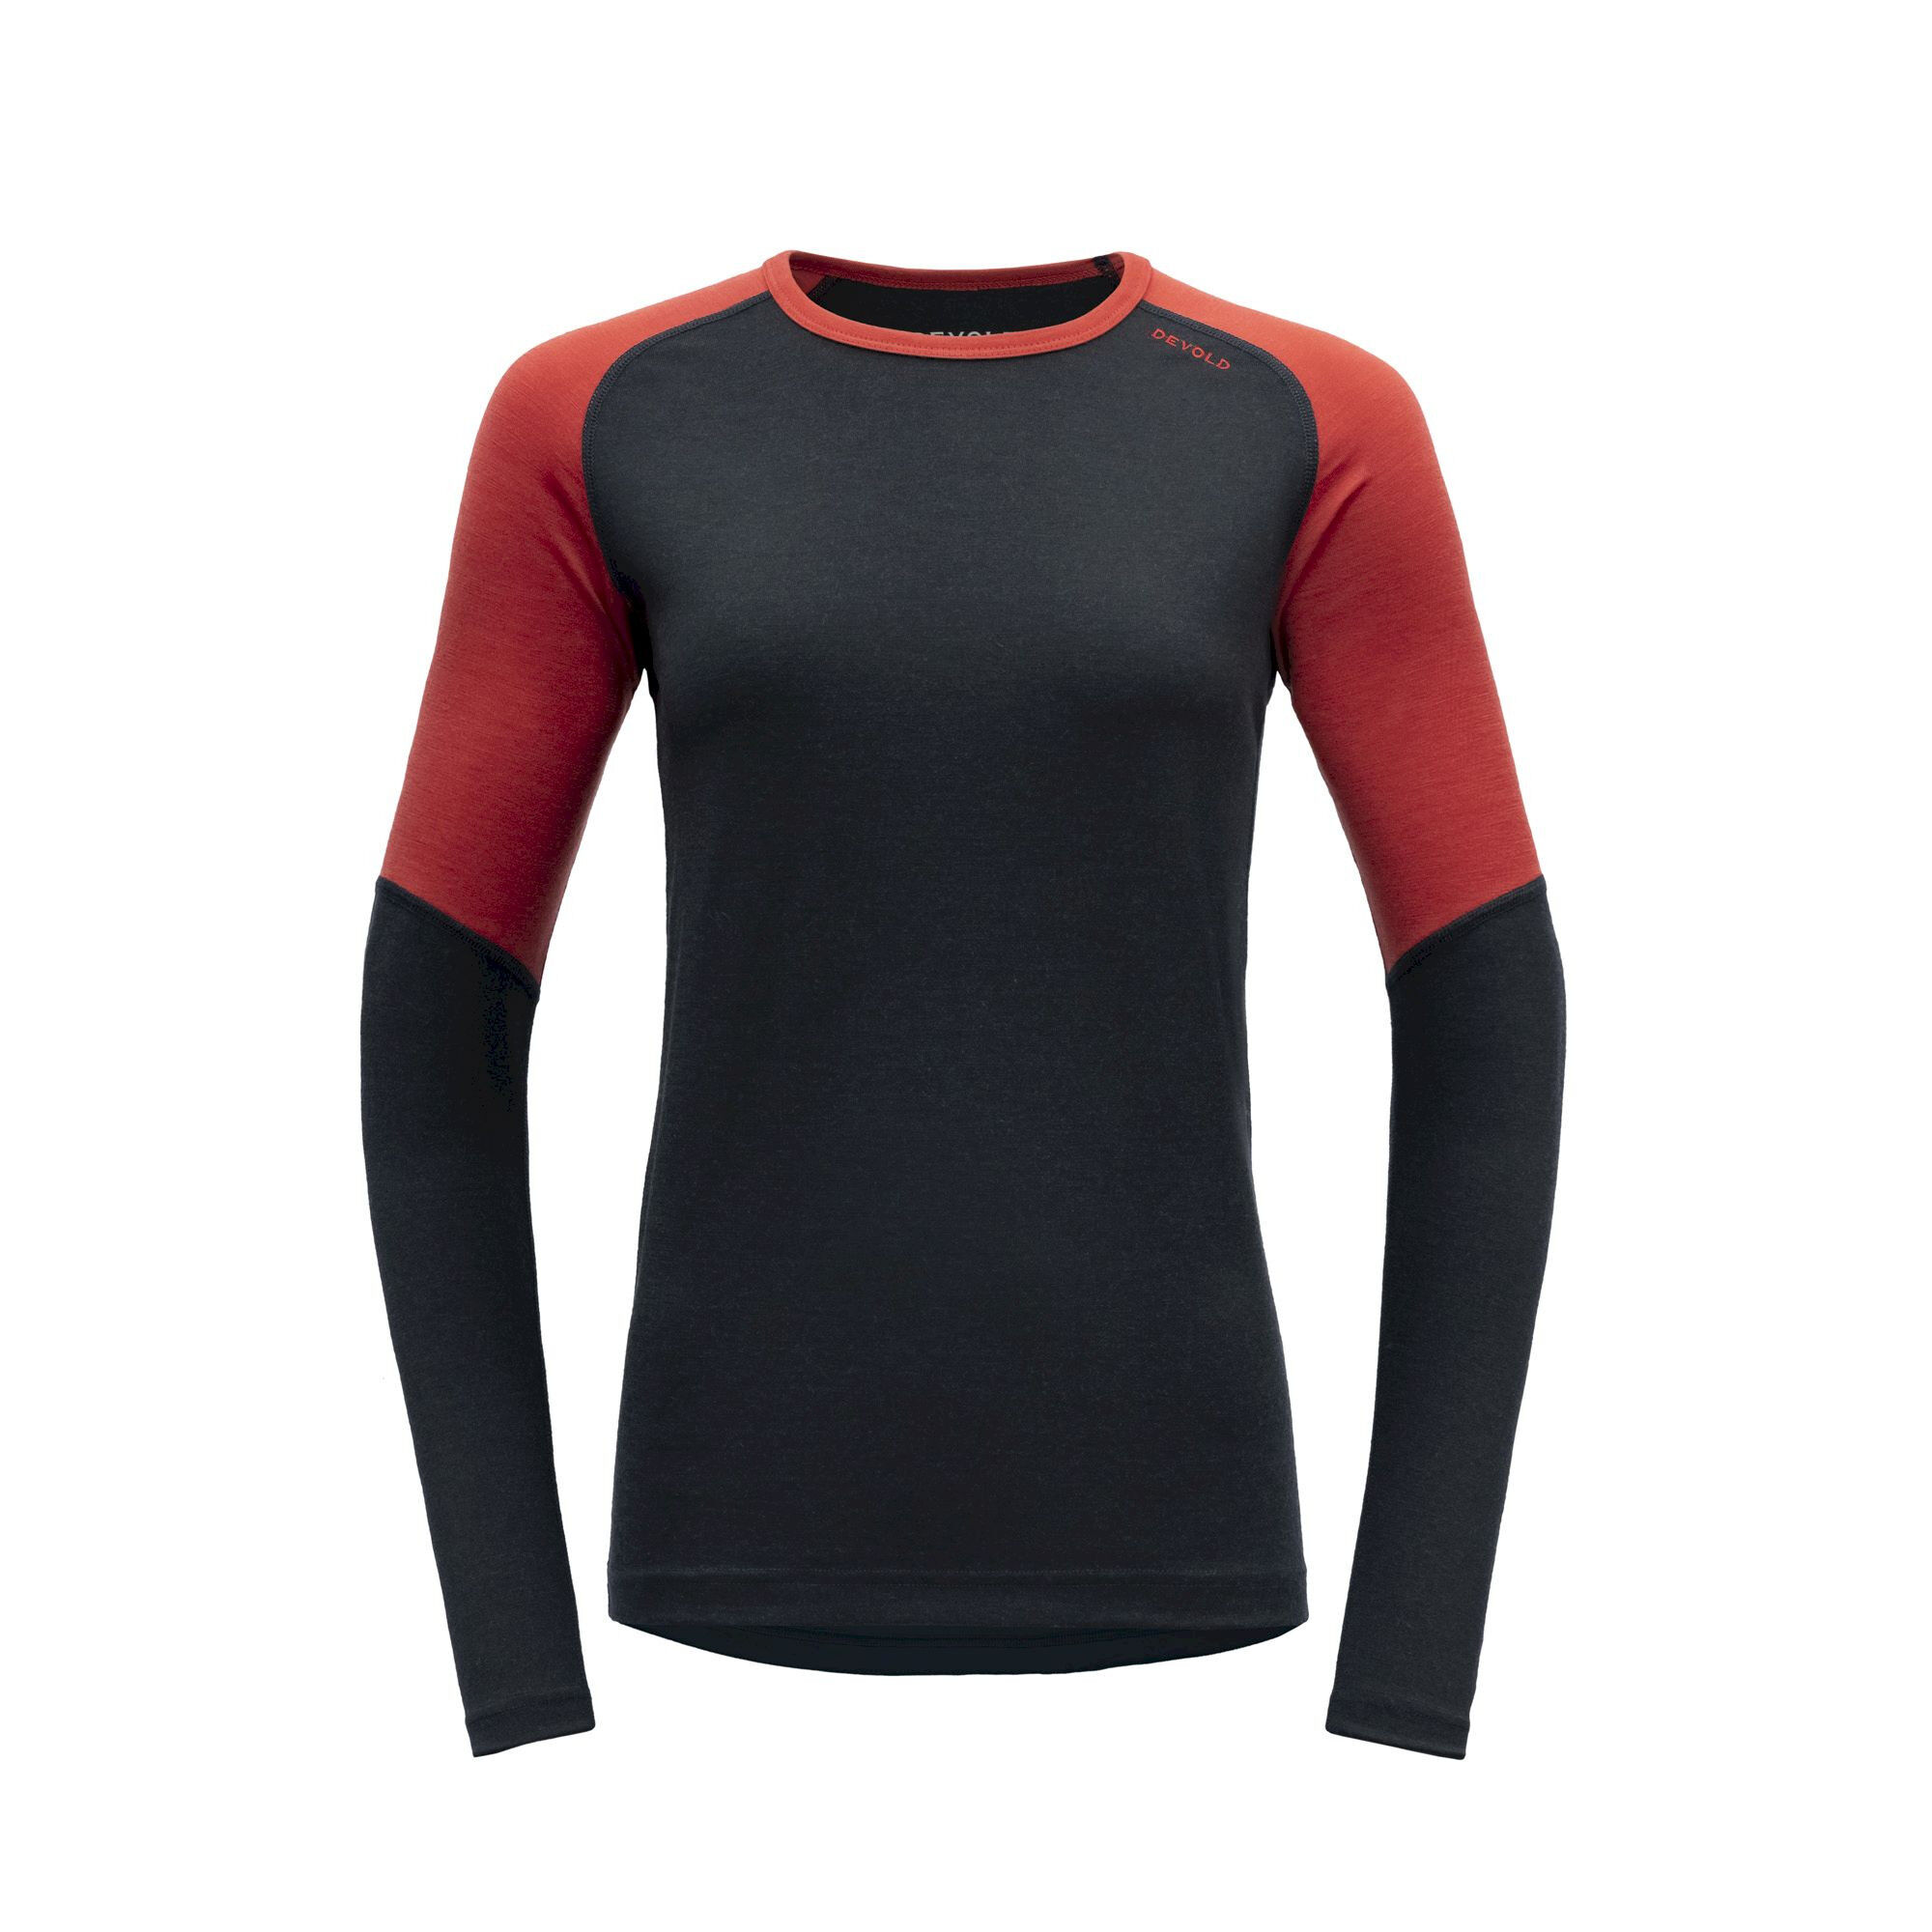 Devold Jakta Merino 200 Shirt - Merino base layer - Women's | Hardloop